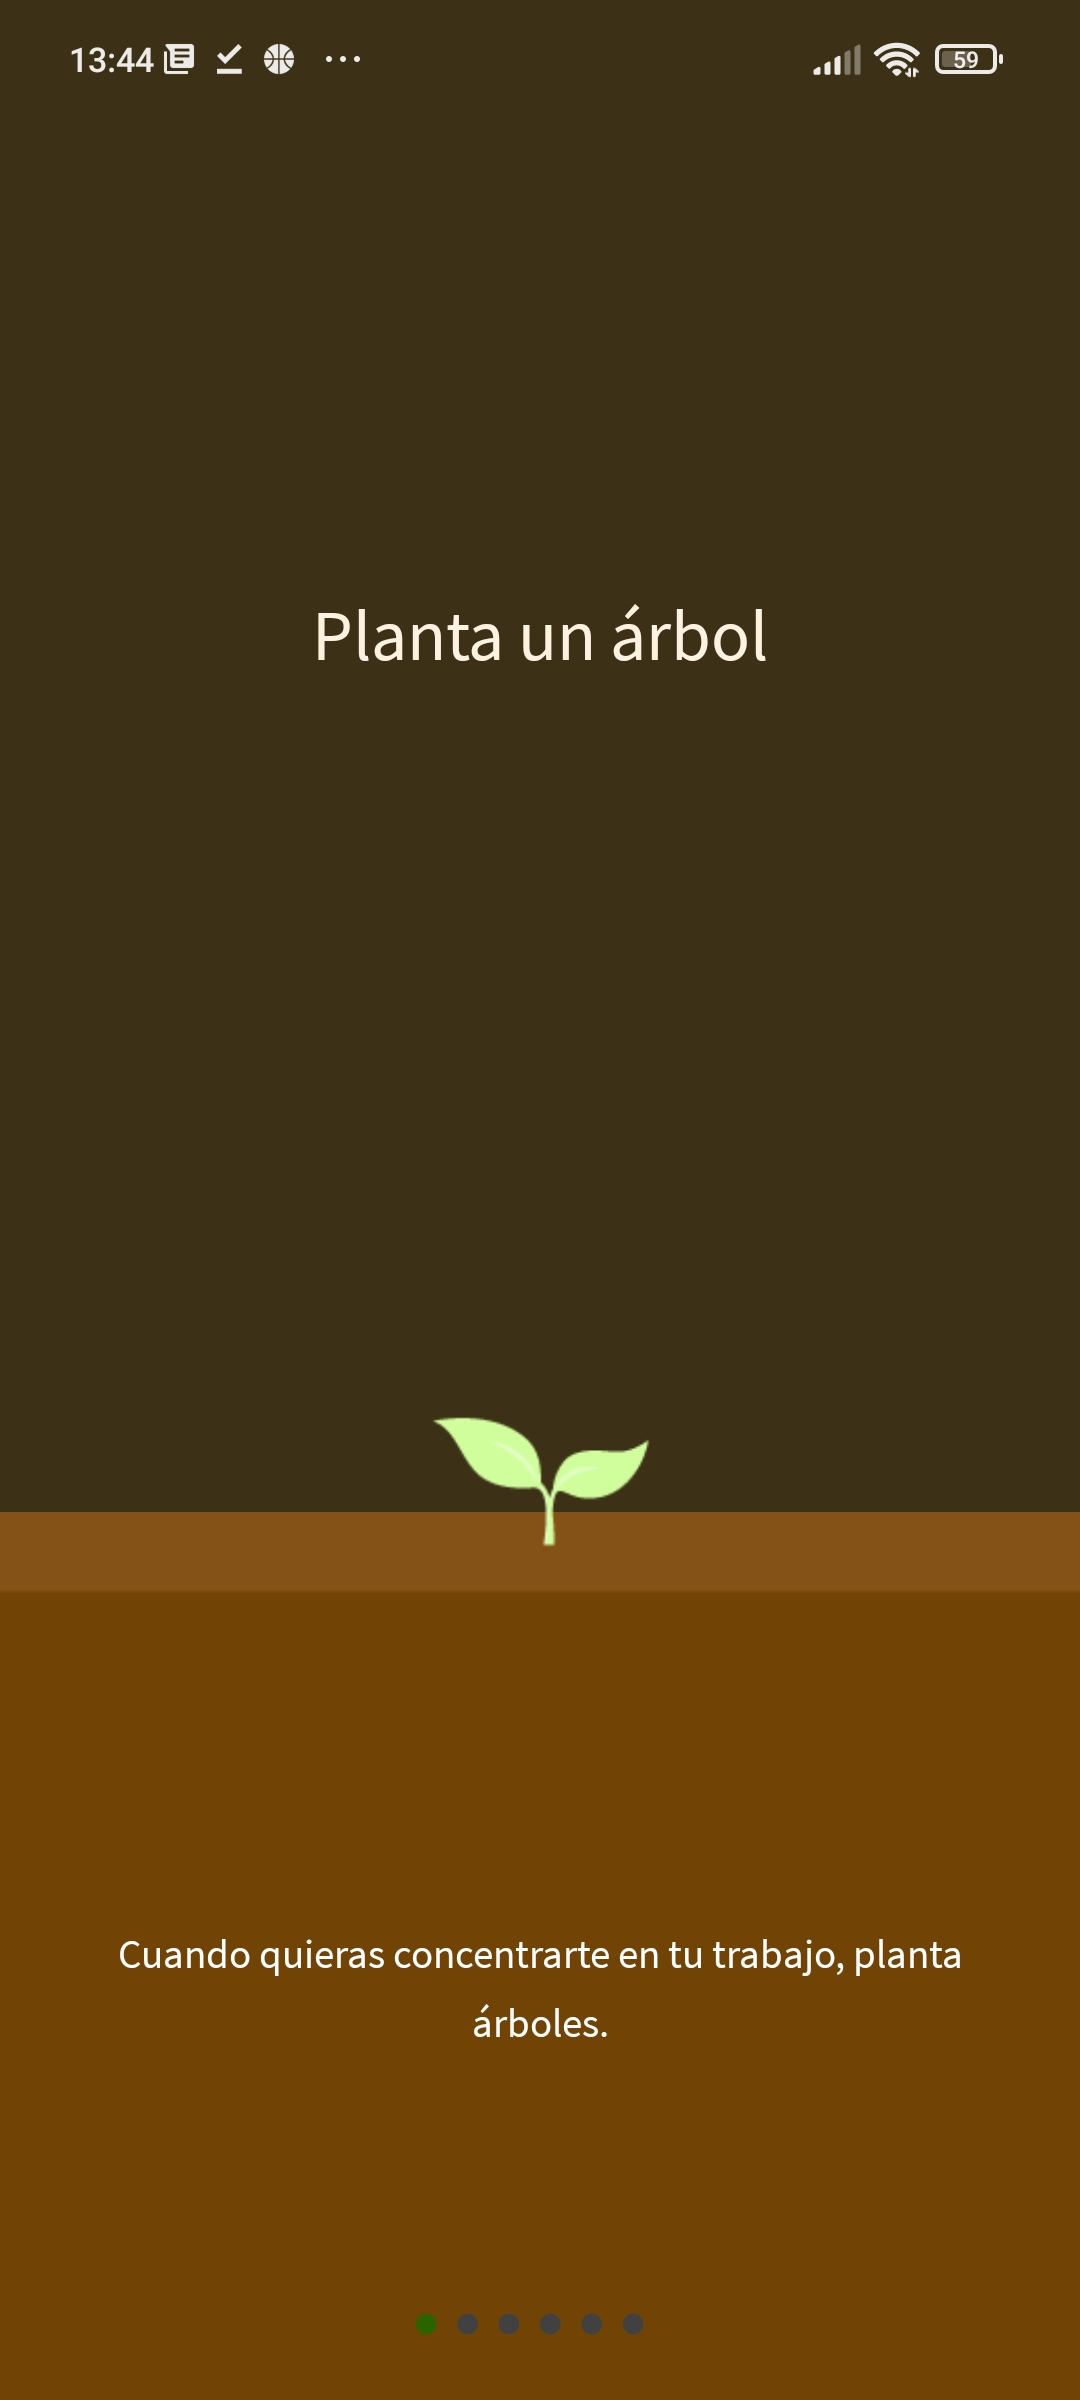 Imagen que muestra un árbol recién plantado en la app.